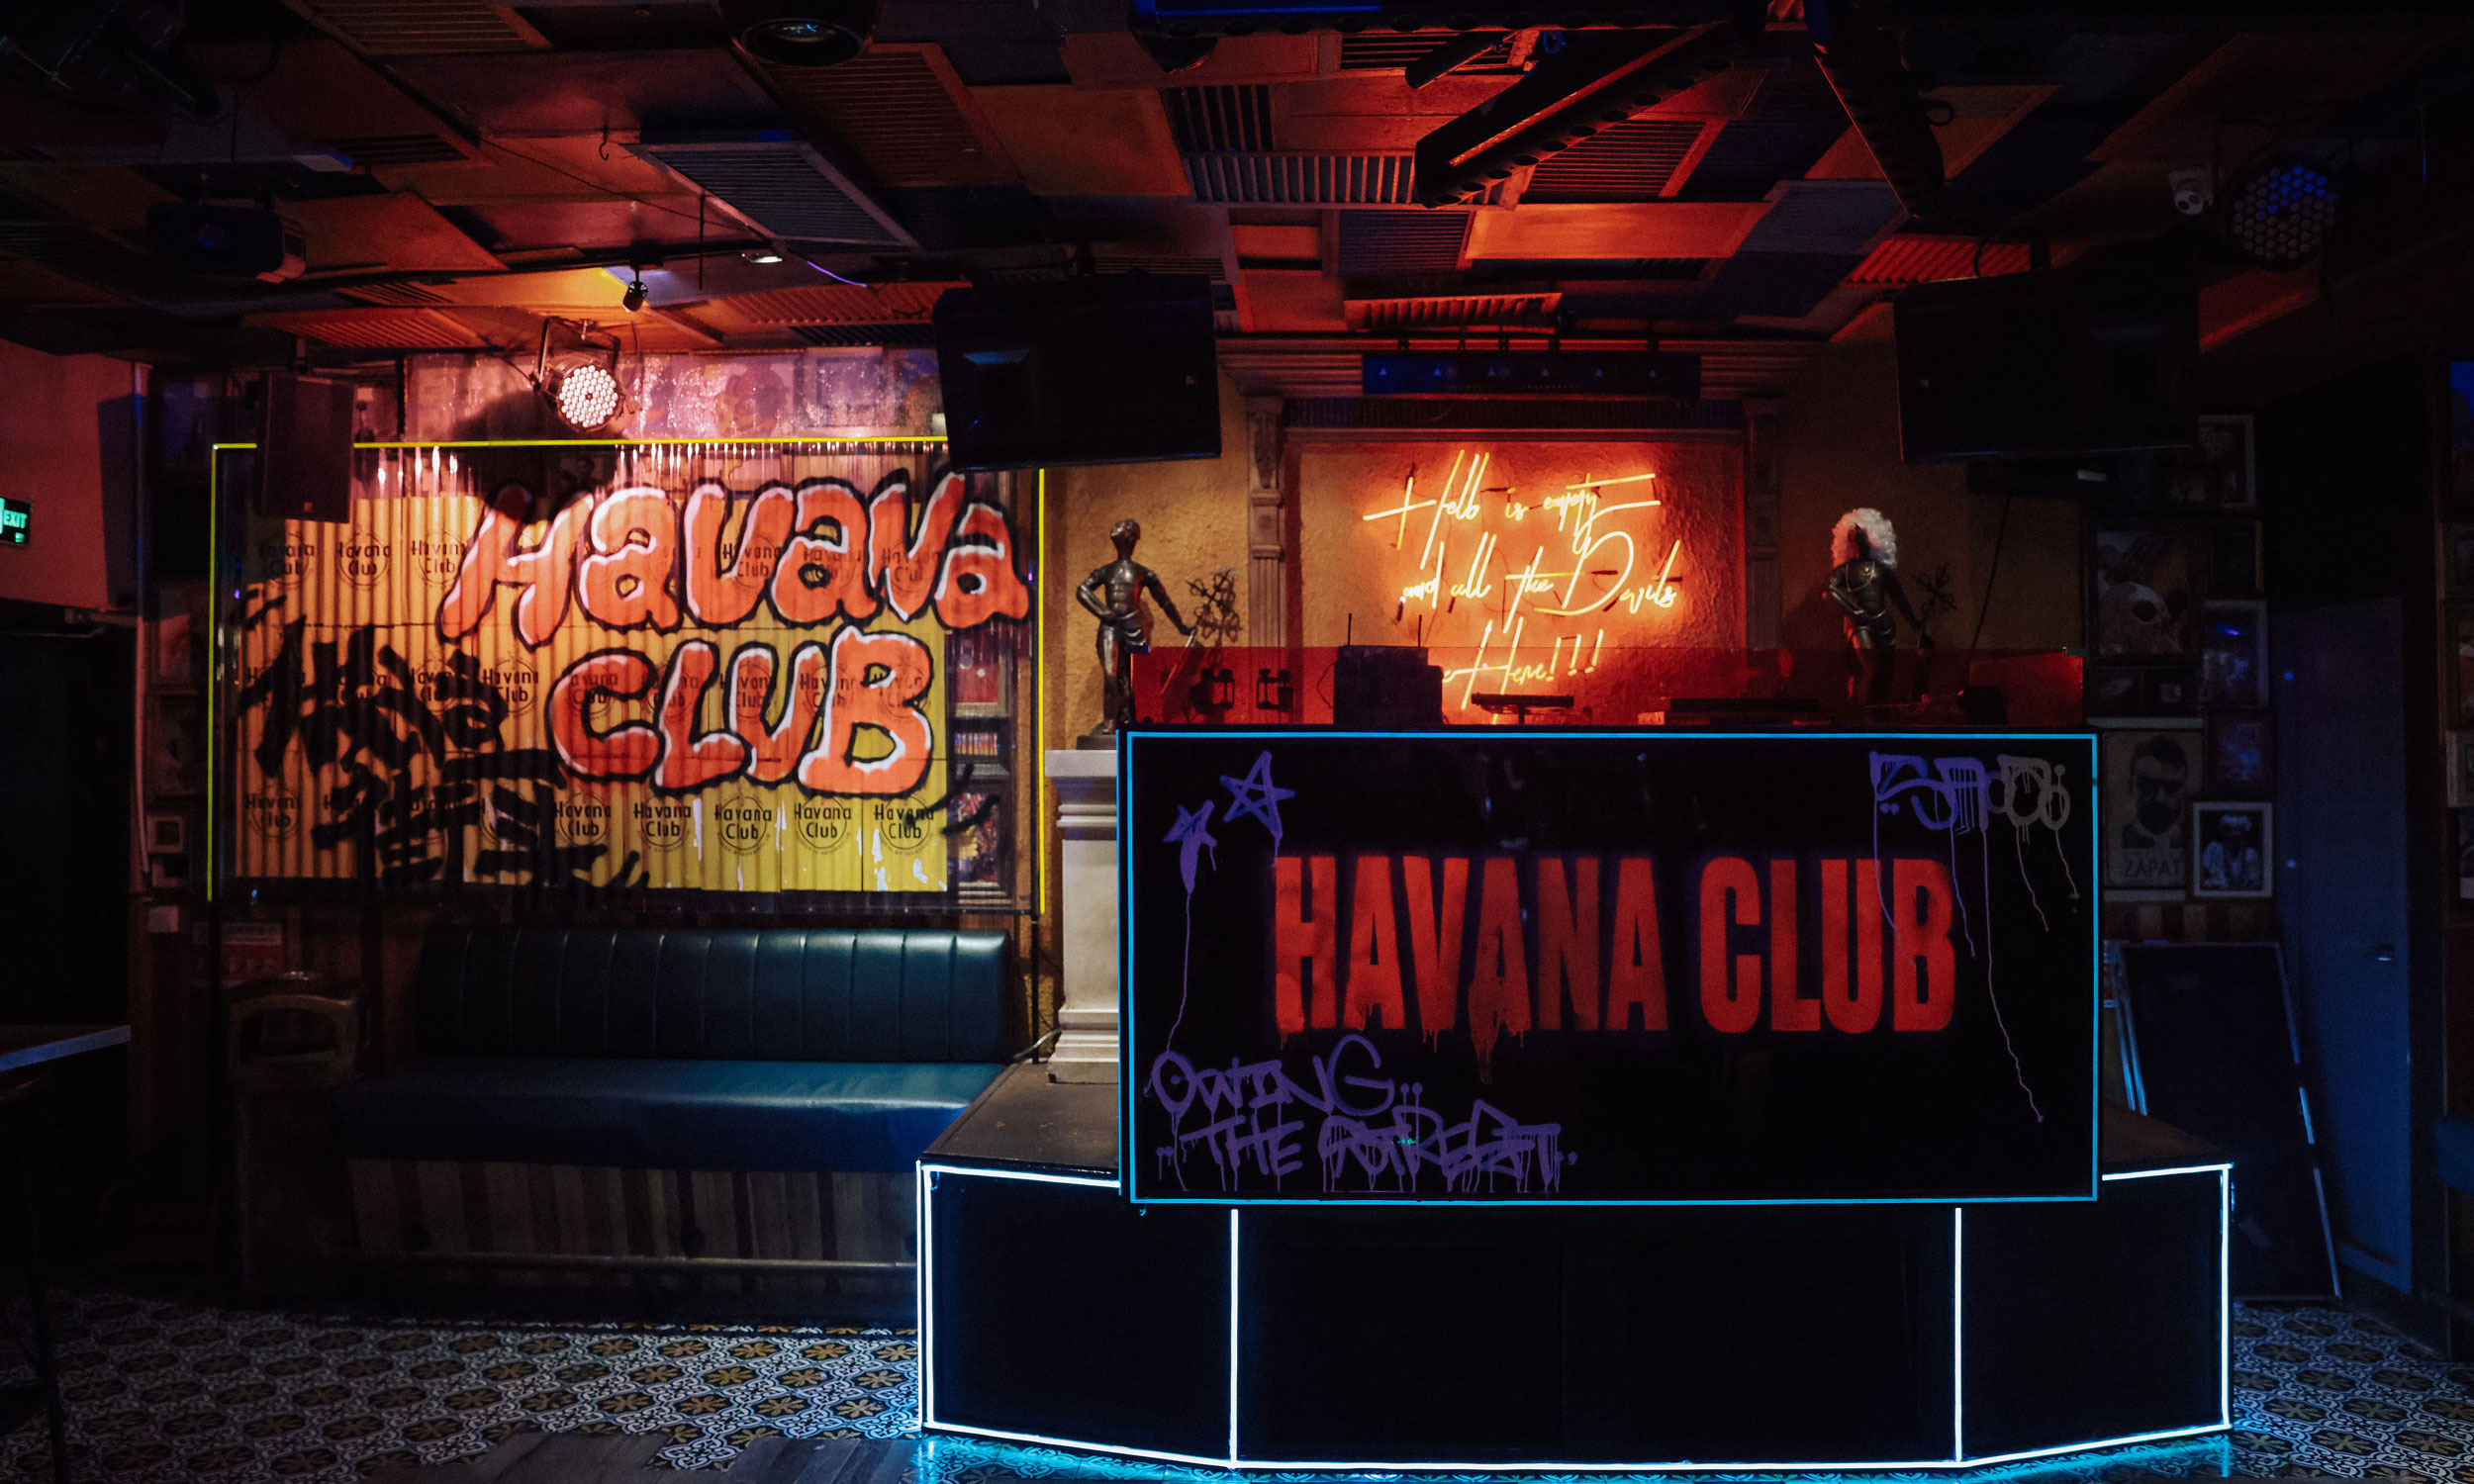 重庆 Havana Club 街区「杂货店」限时营业